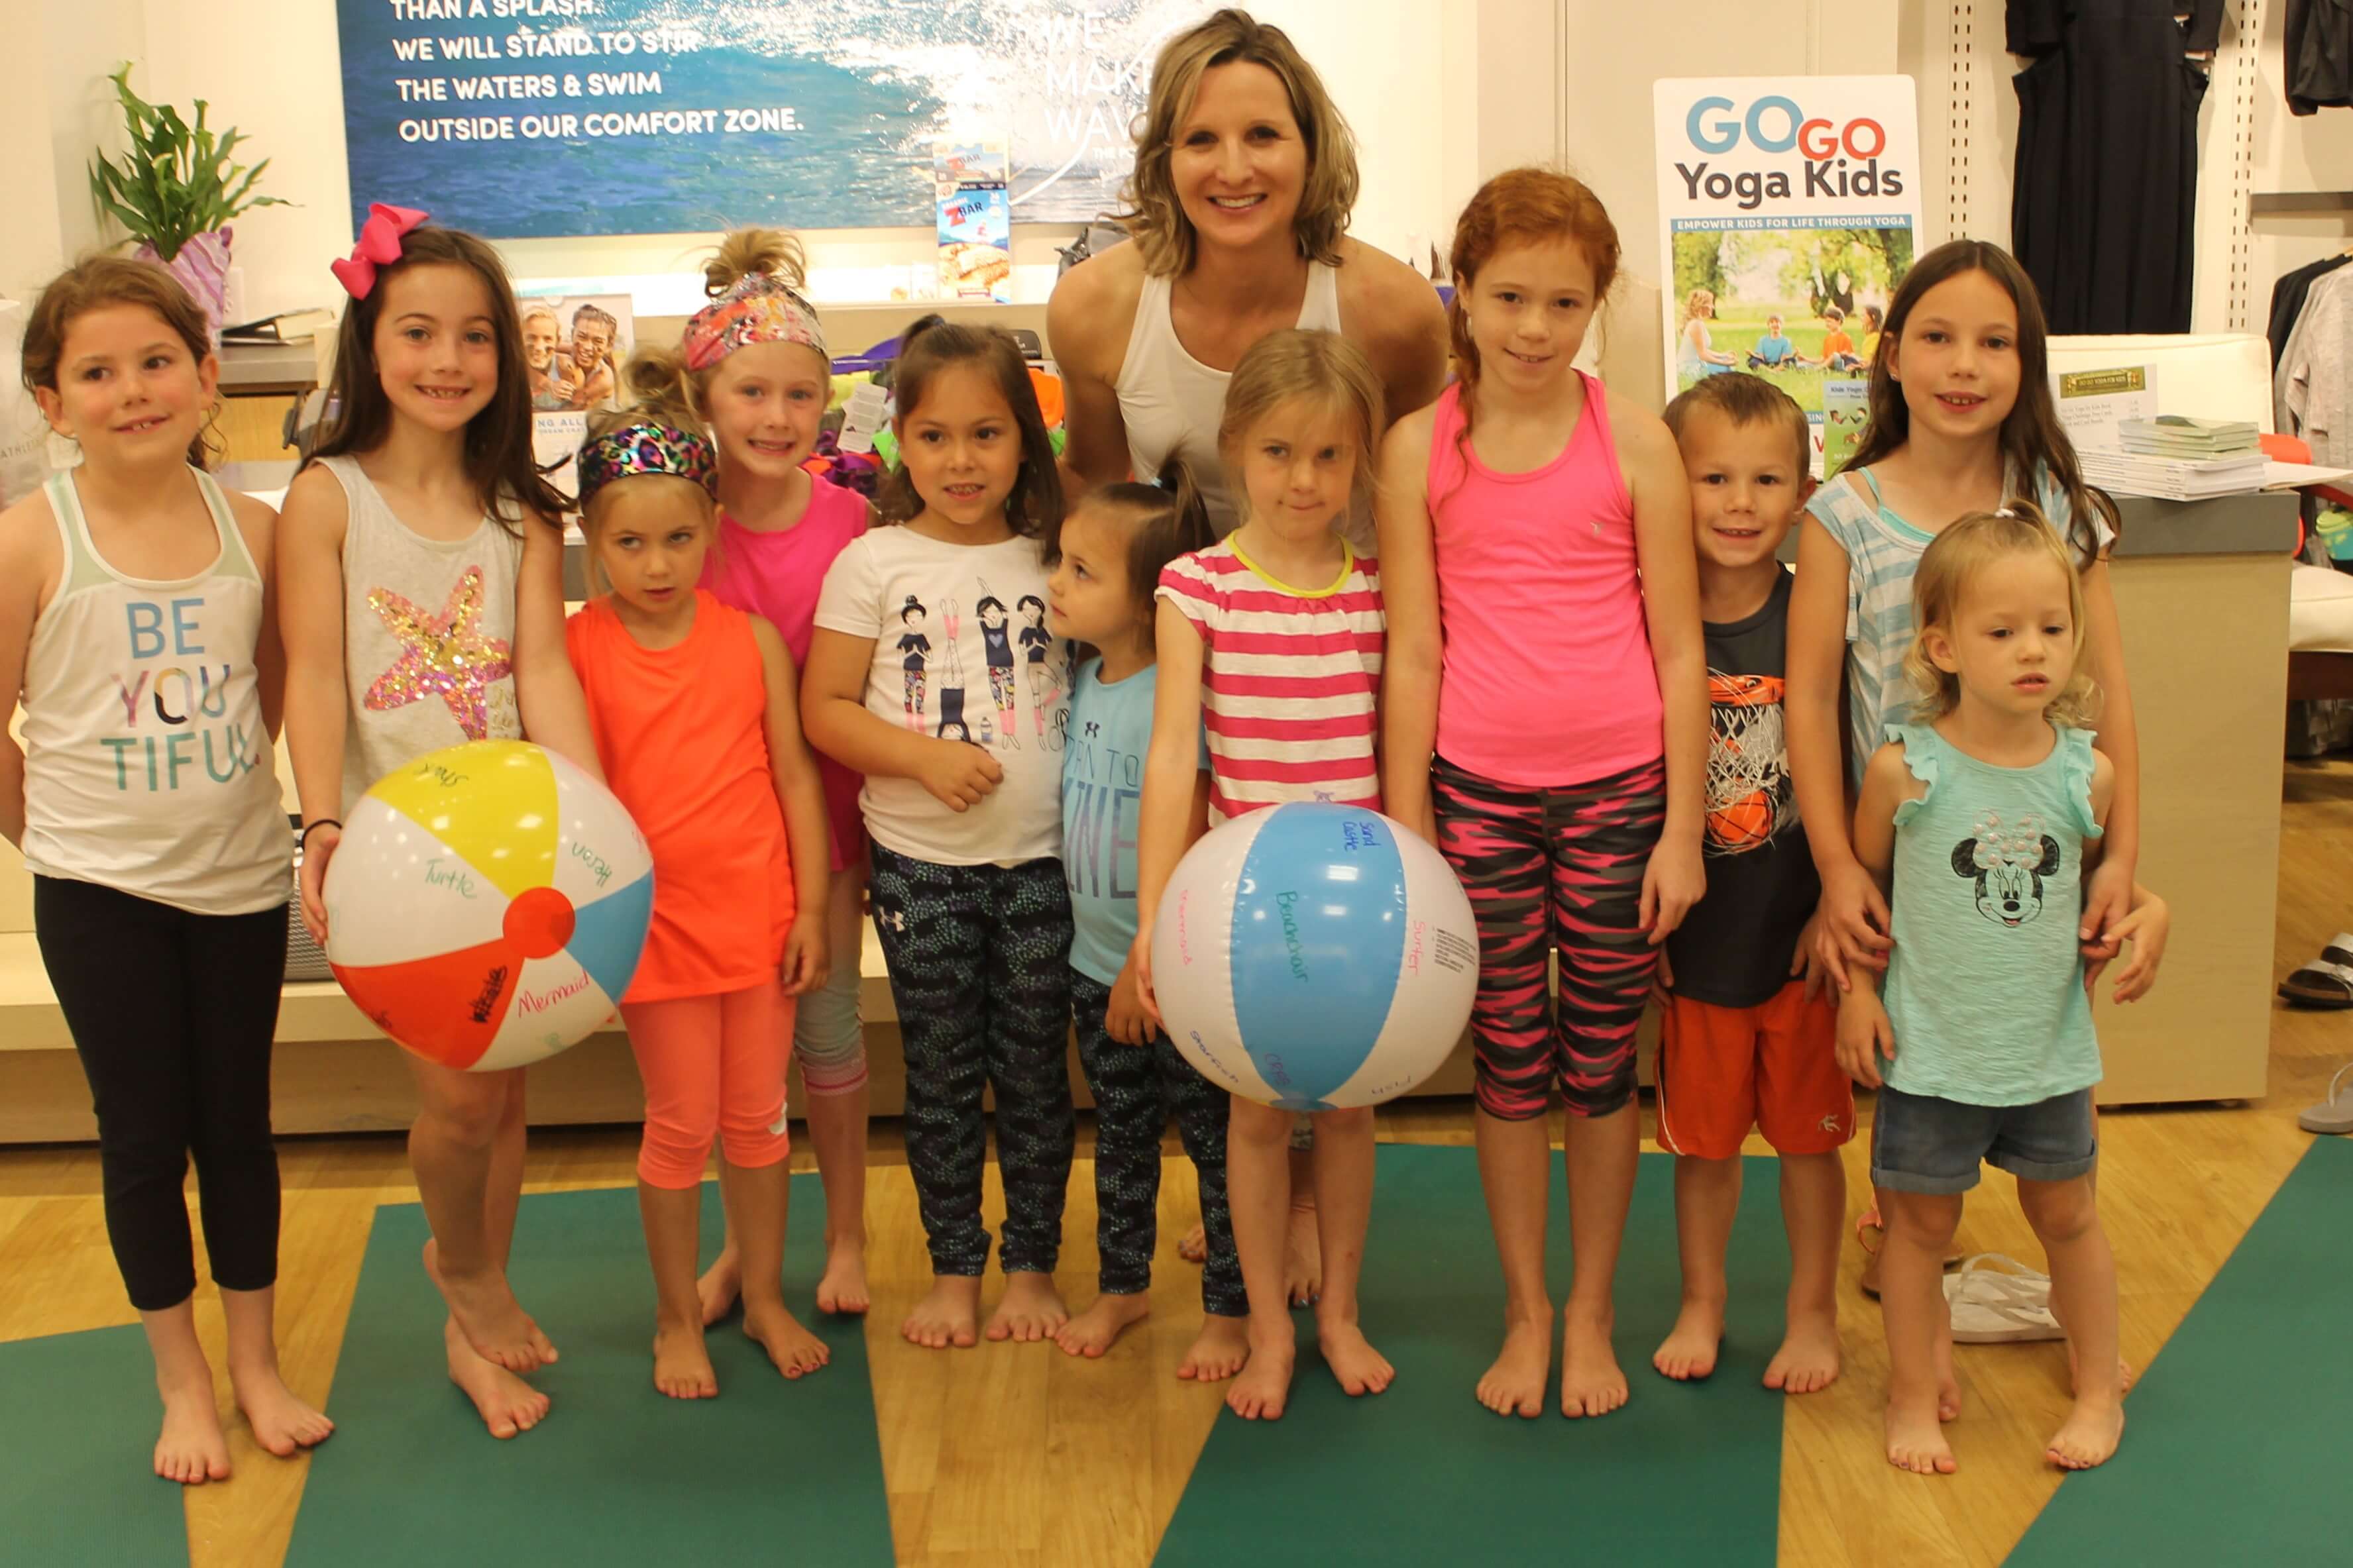 Sara J. Weis's Blog: Go Go Yoga Kids: Empower Kids for 